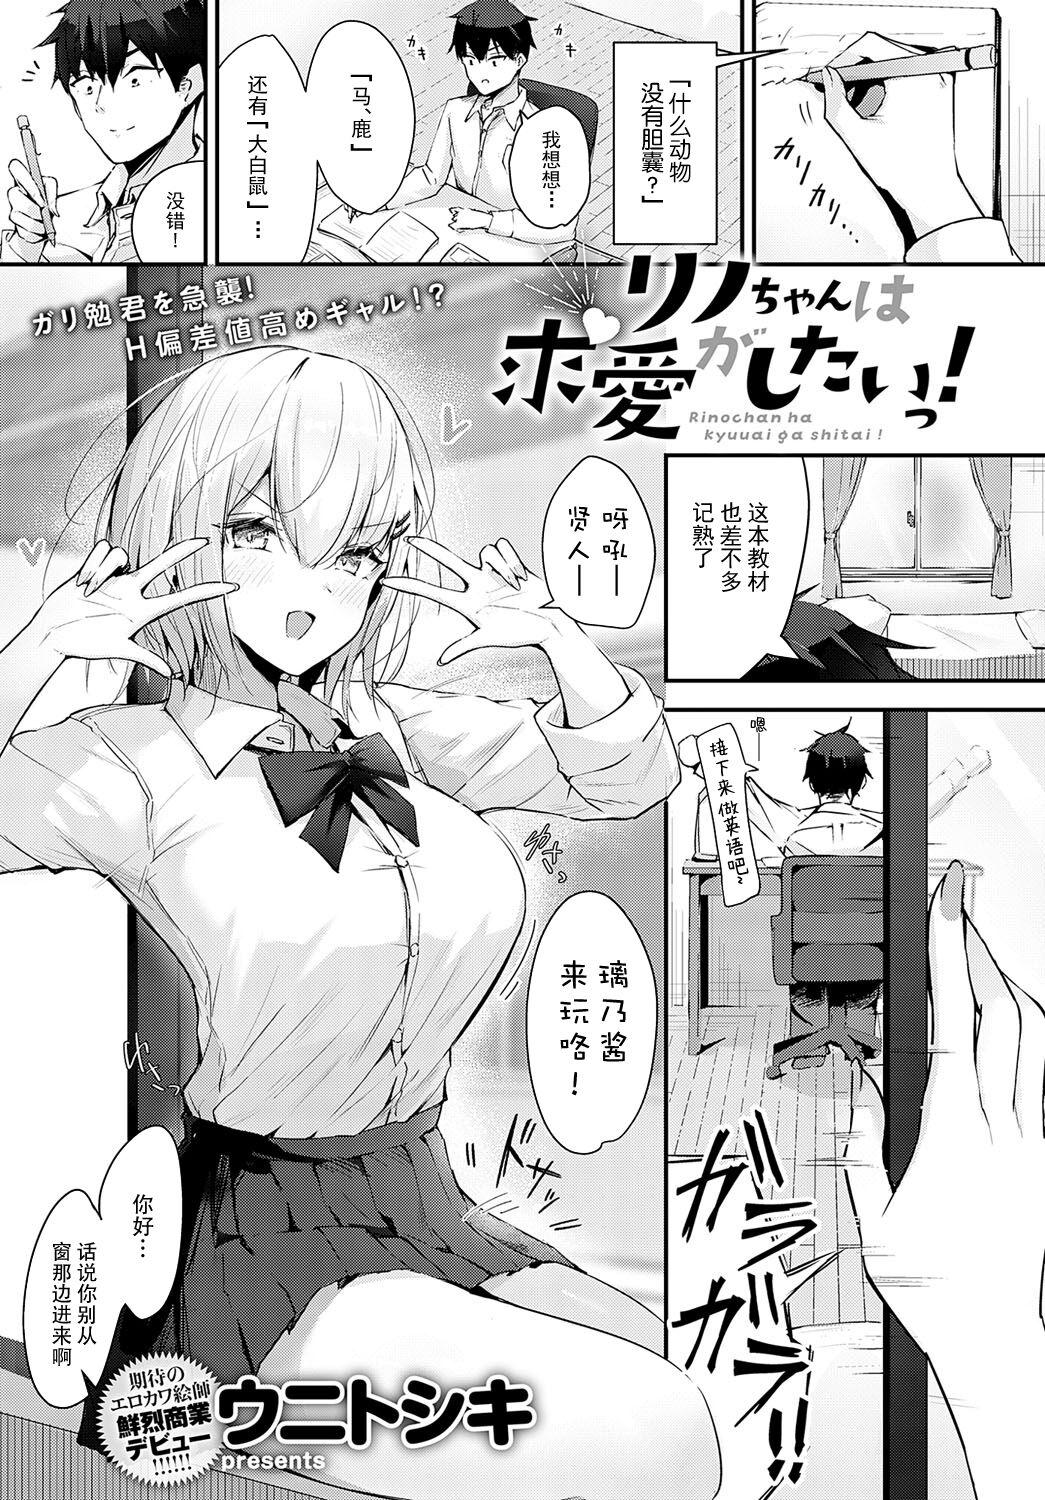 Tongue Rino-chan wa Kyuai ga Shitaii! Hd Porn - Page 1